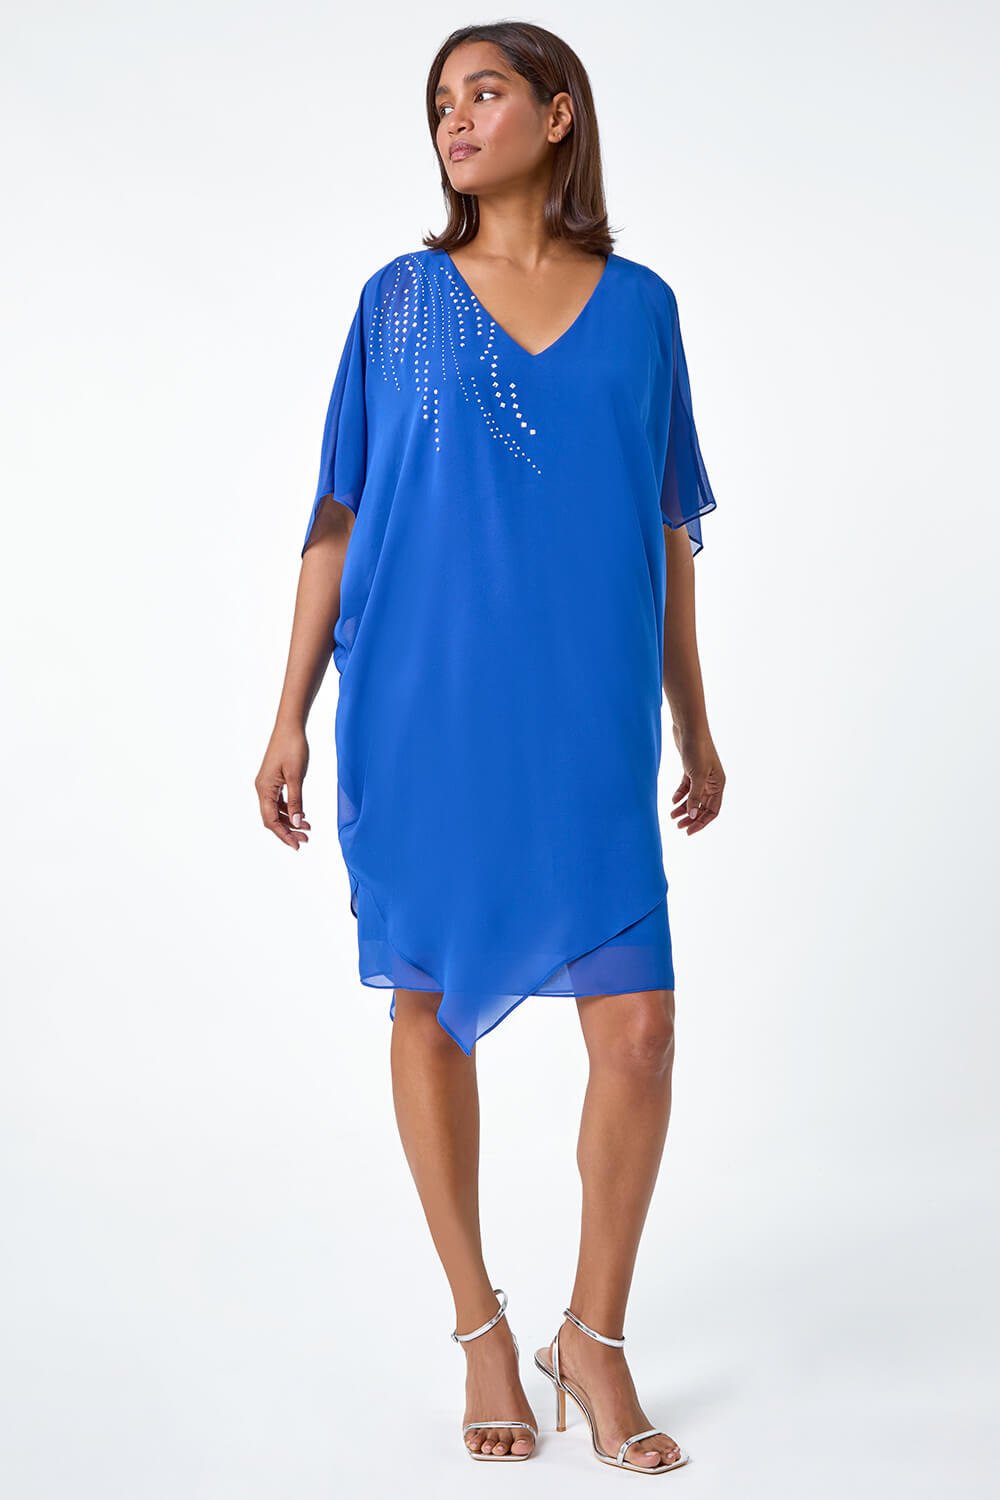 Royal Blue Embellished Cold Shoulder Overlay Dress, Image 2 of 5